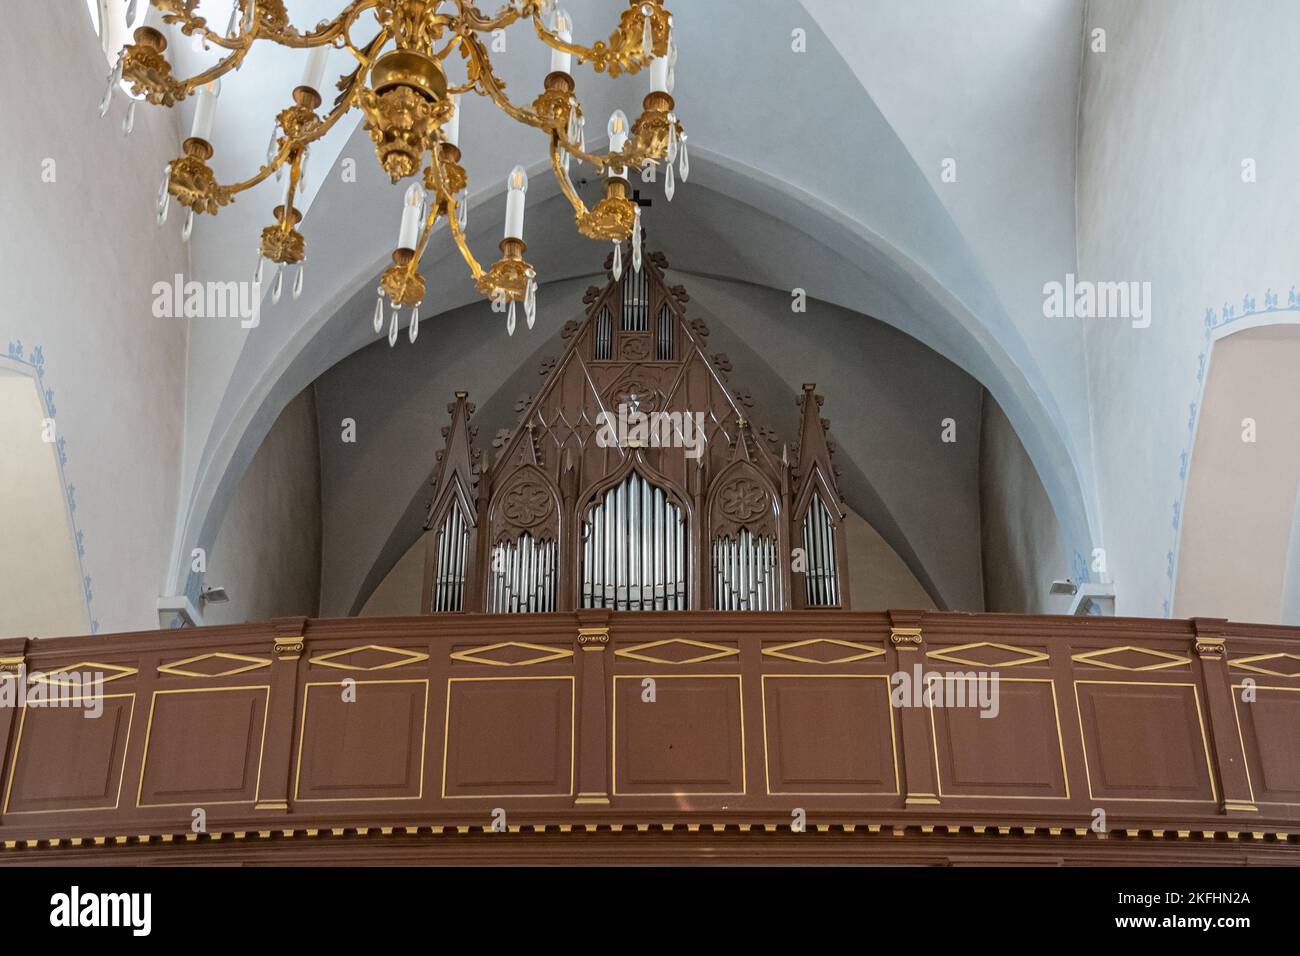 Estonie, Tallinn - 21 juillet 2022 : à l'intérieur de la cathédrale Saint-Pierre et Saint-Paul. Orgue sur son loft au-dessus de l'entrée. Tuyaux en argent en bois foncé sculpté ag Banque D'Images